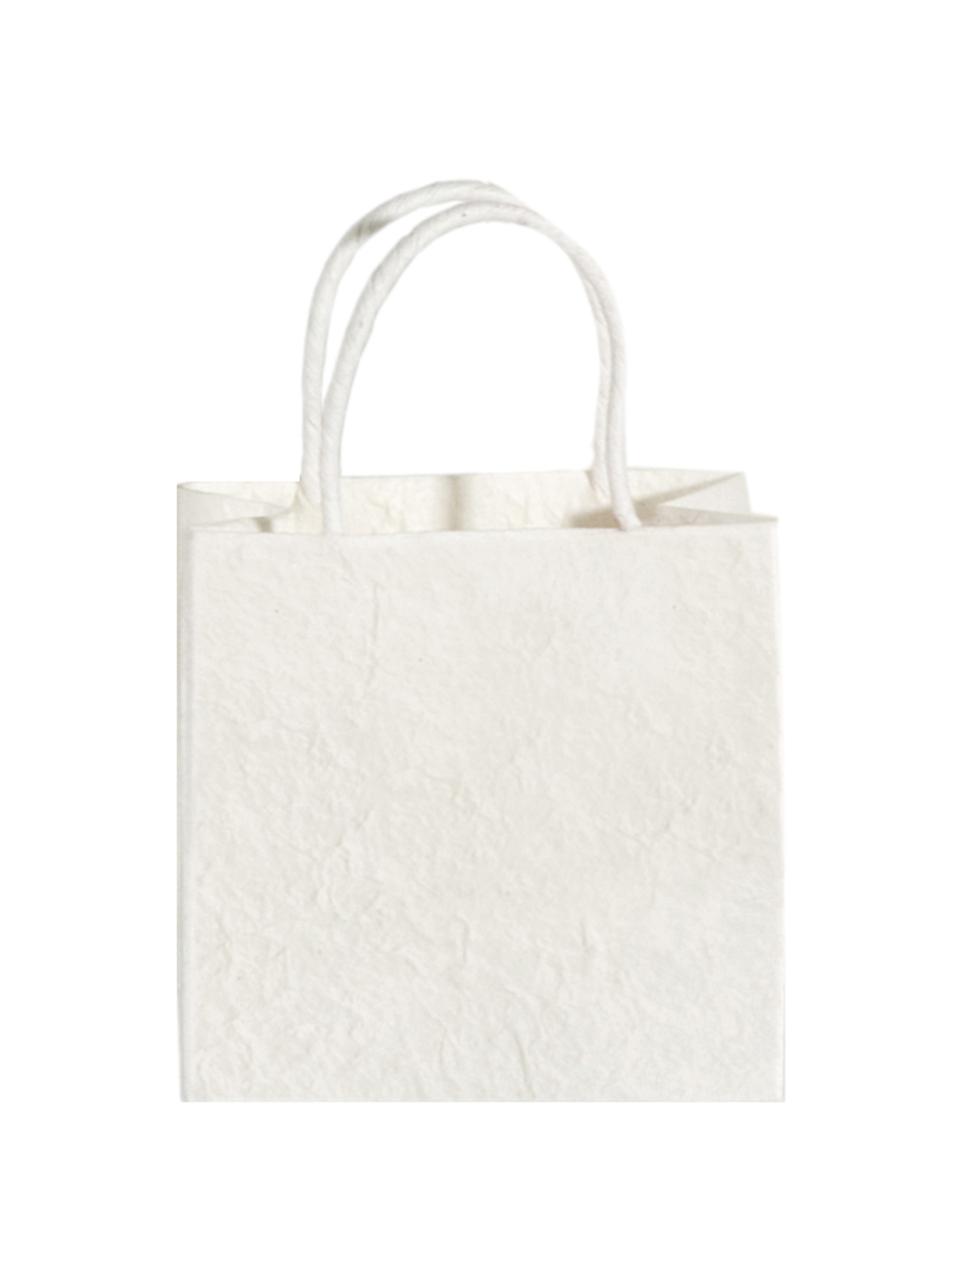 Bolsas para regalo Will, 3 uds., Papel, Blanco crema, An 20 x Al 20 cm